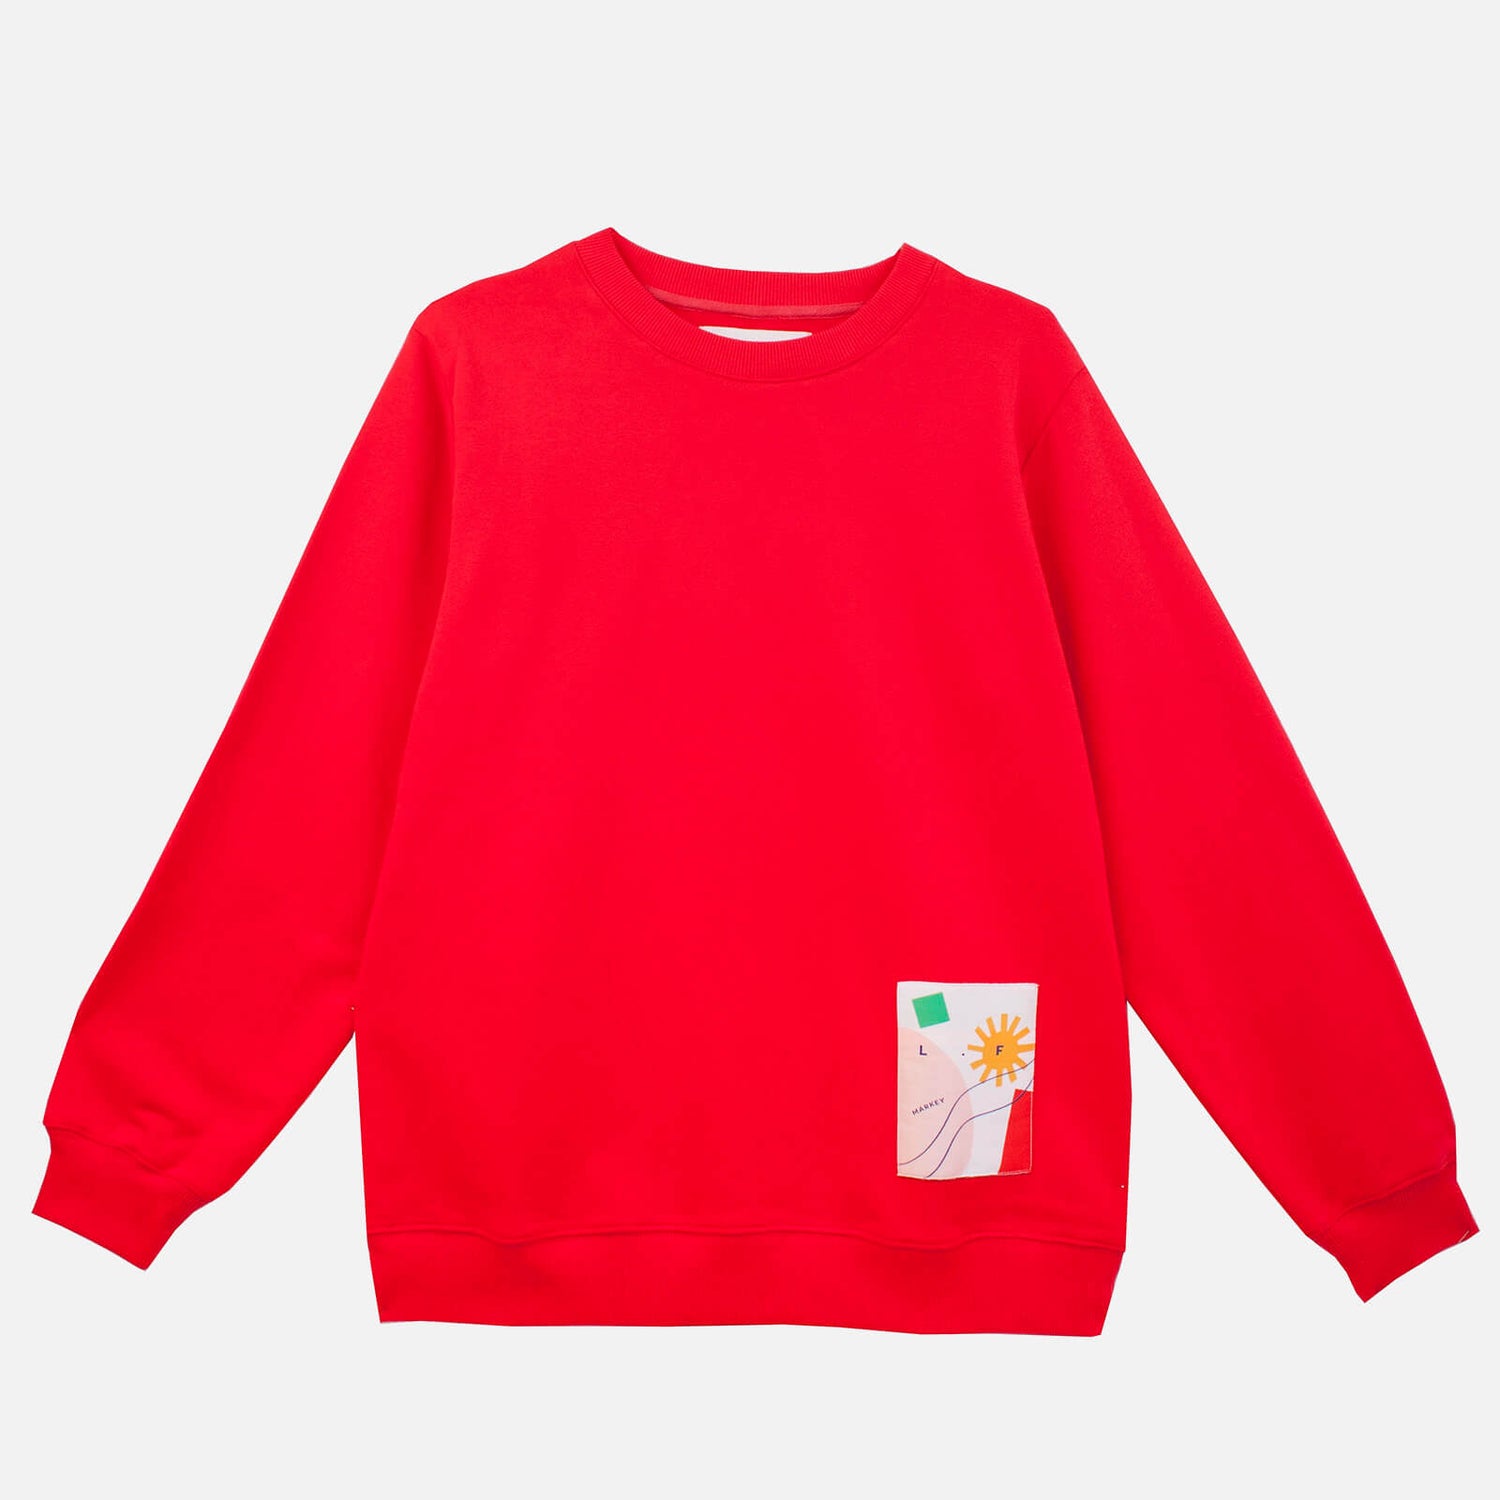 L.F Markey Women's Toby Sweatshirt - Red - UK 6